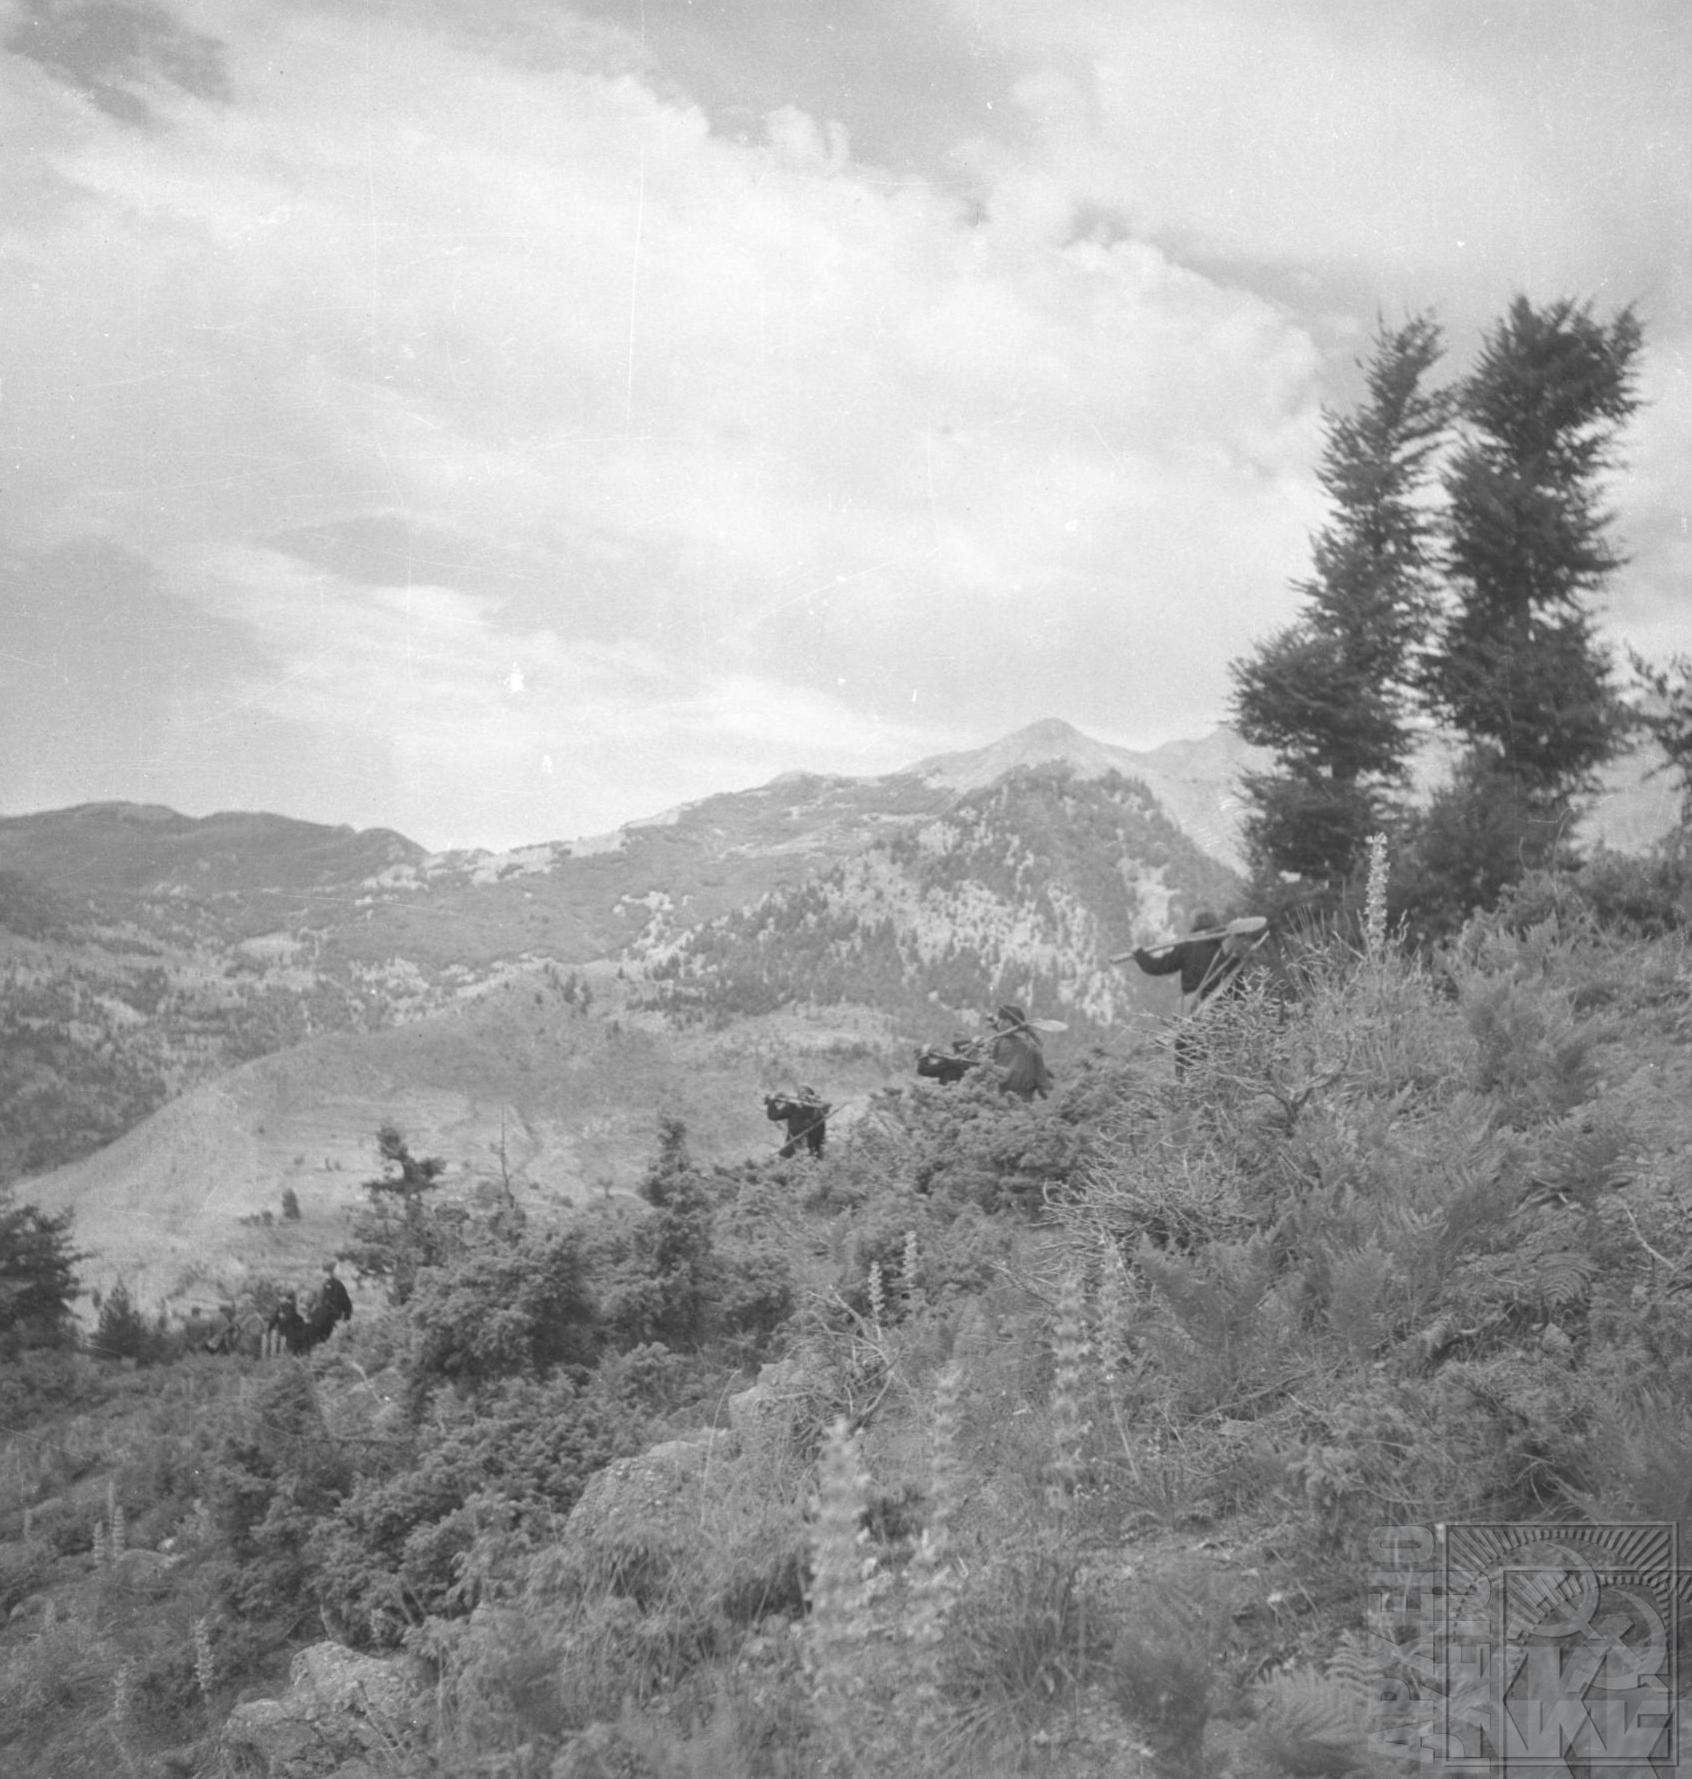 Στις 28 Αυγούστου 1949 άρχισε η σύμπτυξη των δυνάμεων του ΔΣΕ προς το Πληκάτι κι απο κεί στις 29 του μήνα πέρασαν την διάβαση της Μπάτρας, πάνω από τους Χιονιάδες, και πήγαν στη ΛΔ της Αλβανίας. Στη φωτογραφία εμφανίζεται η κίνηση ενός αποσπάσματος μαχητών και στο βάθος το πέρασμα της Μπάτρας.